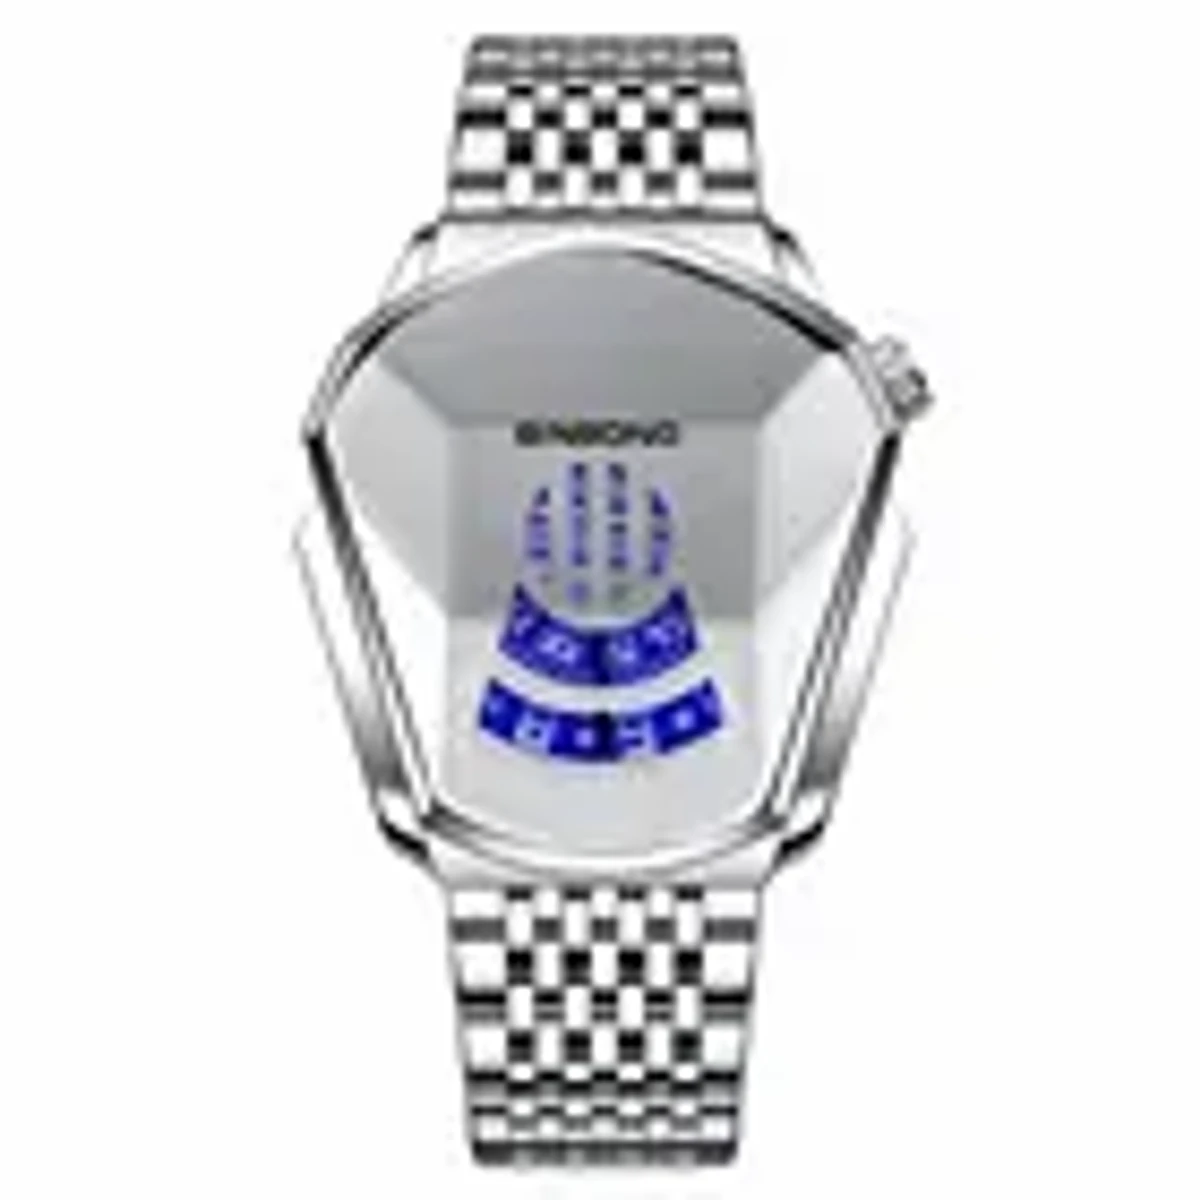 BINBOND Quartz men’s watch trend market watch style locomotive concept watch men